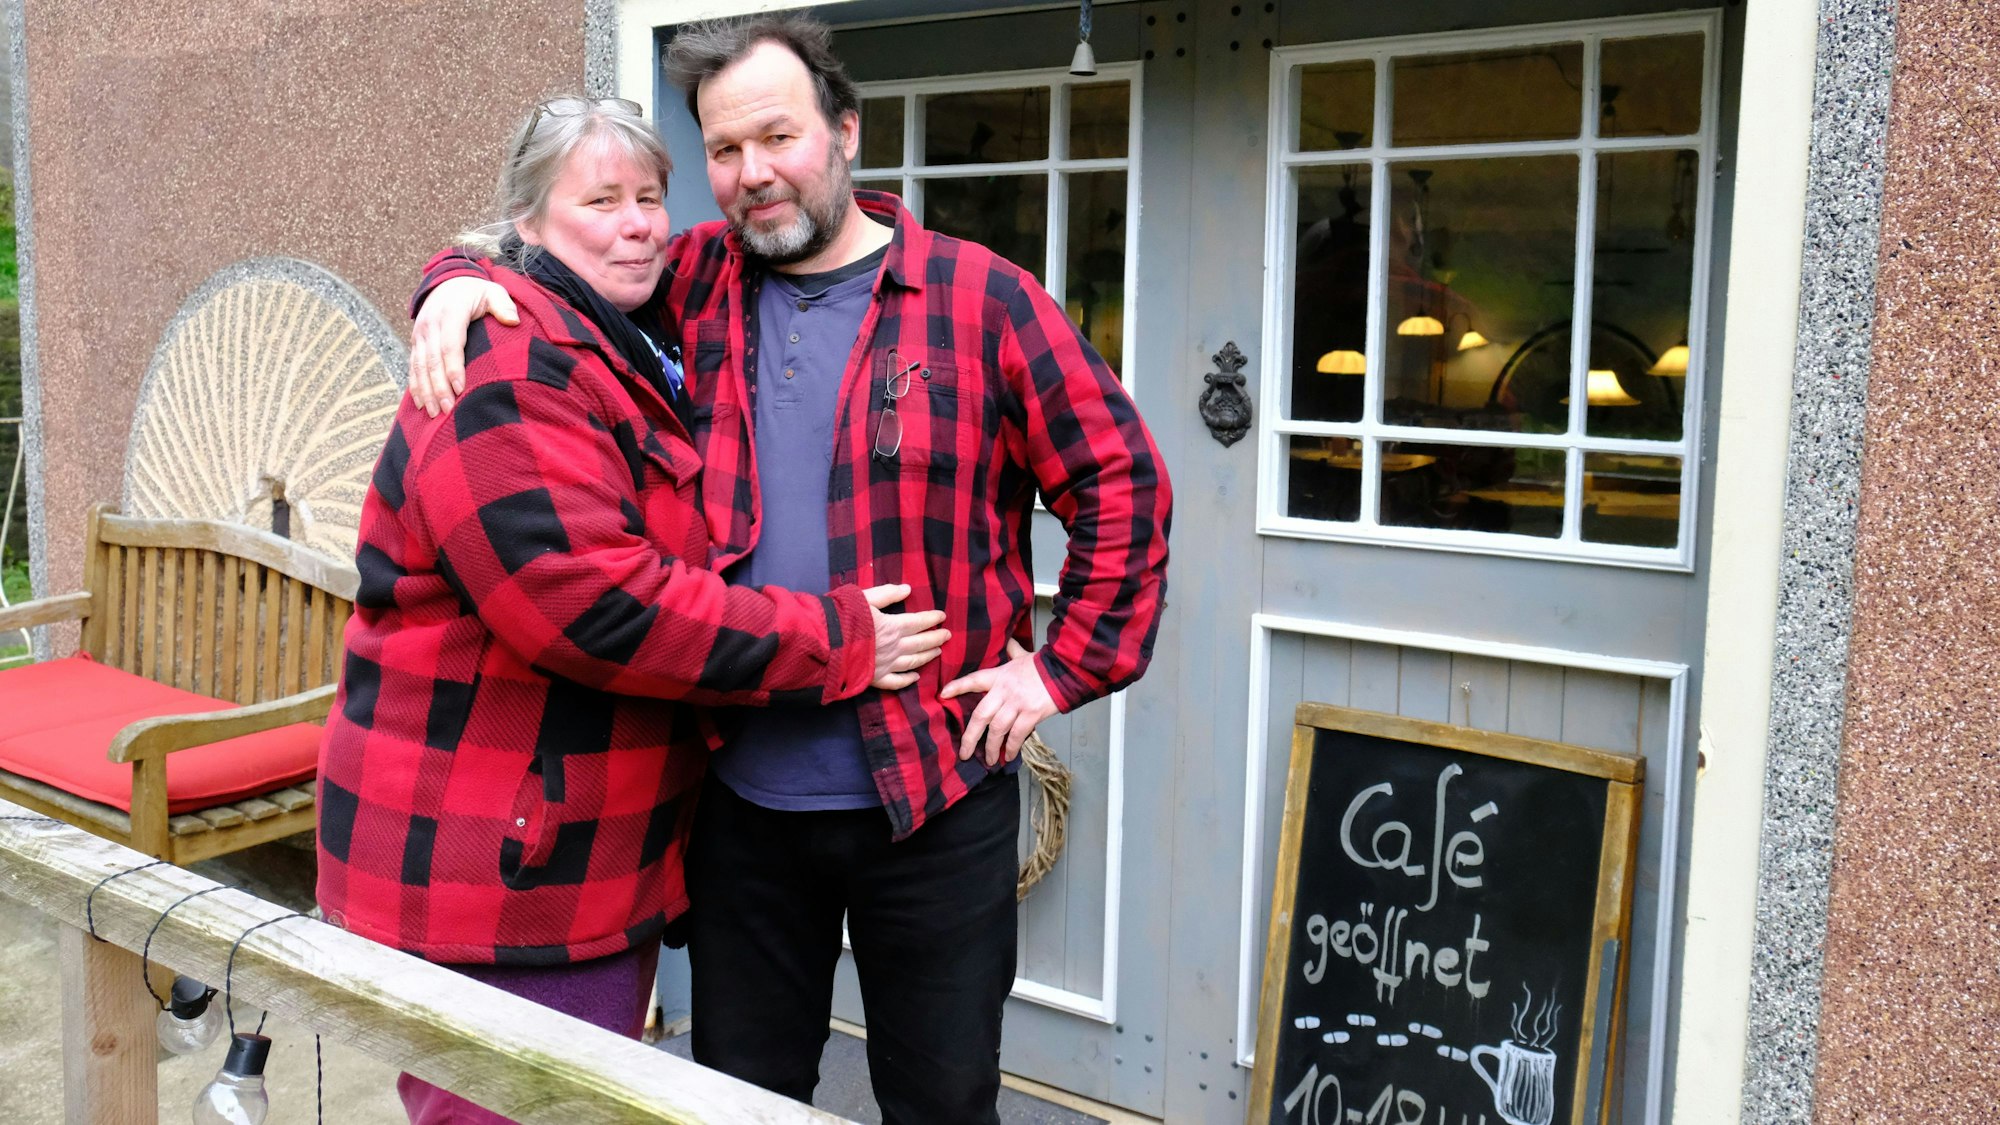 Karin Goebel und Wolfgang Pütz stehen vor dem Eingang ihres Cafés. Beide tragen rot-karierte Holzfällerhemden.